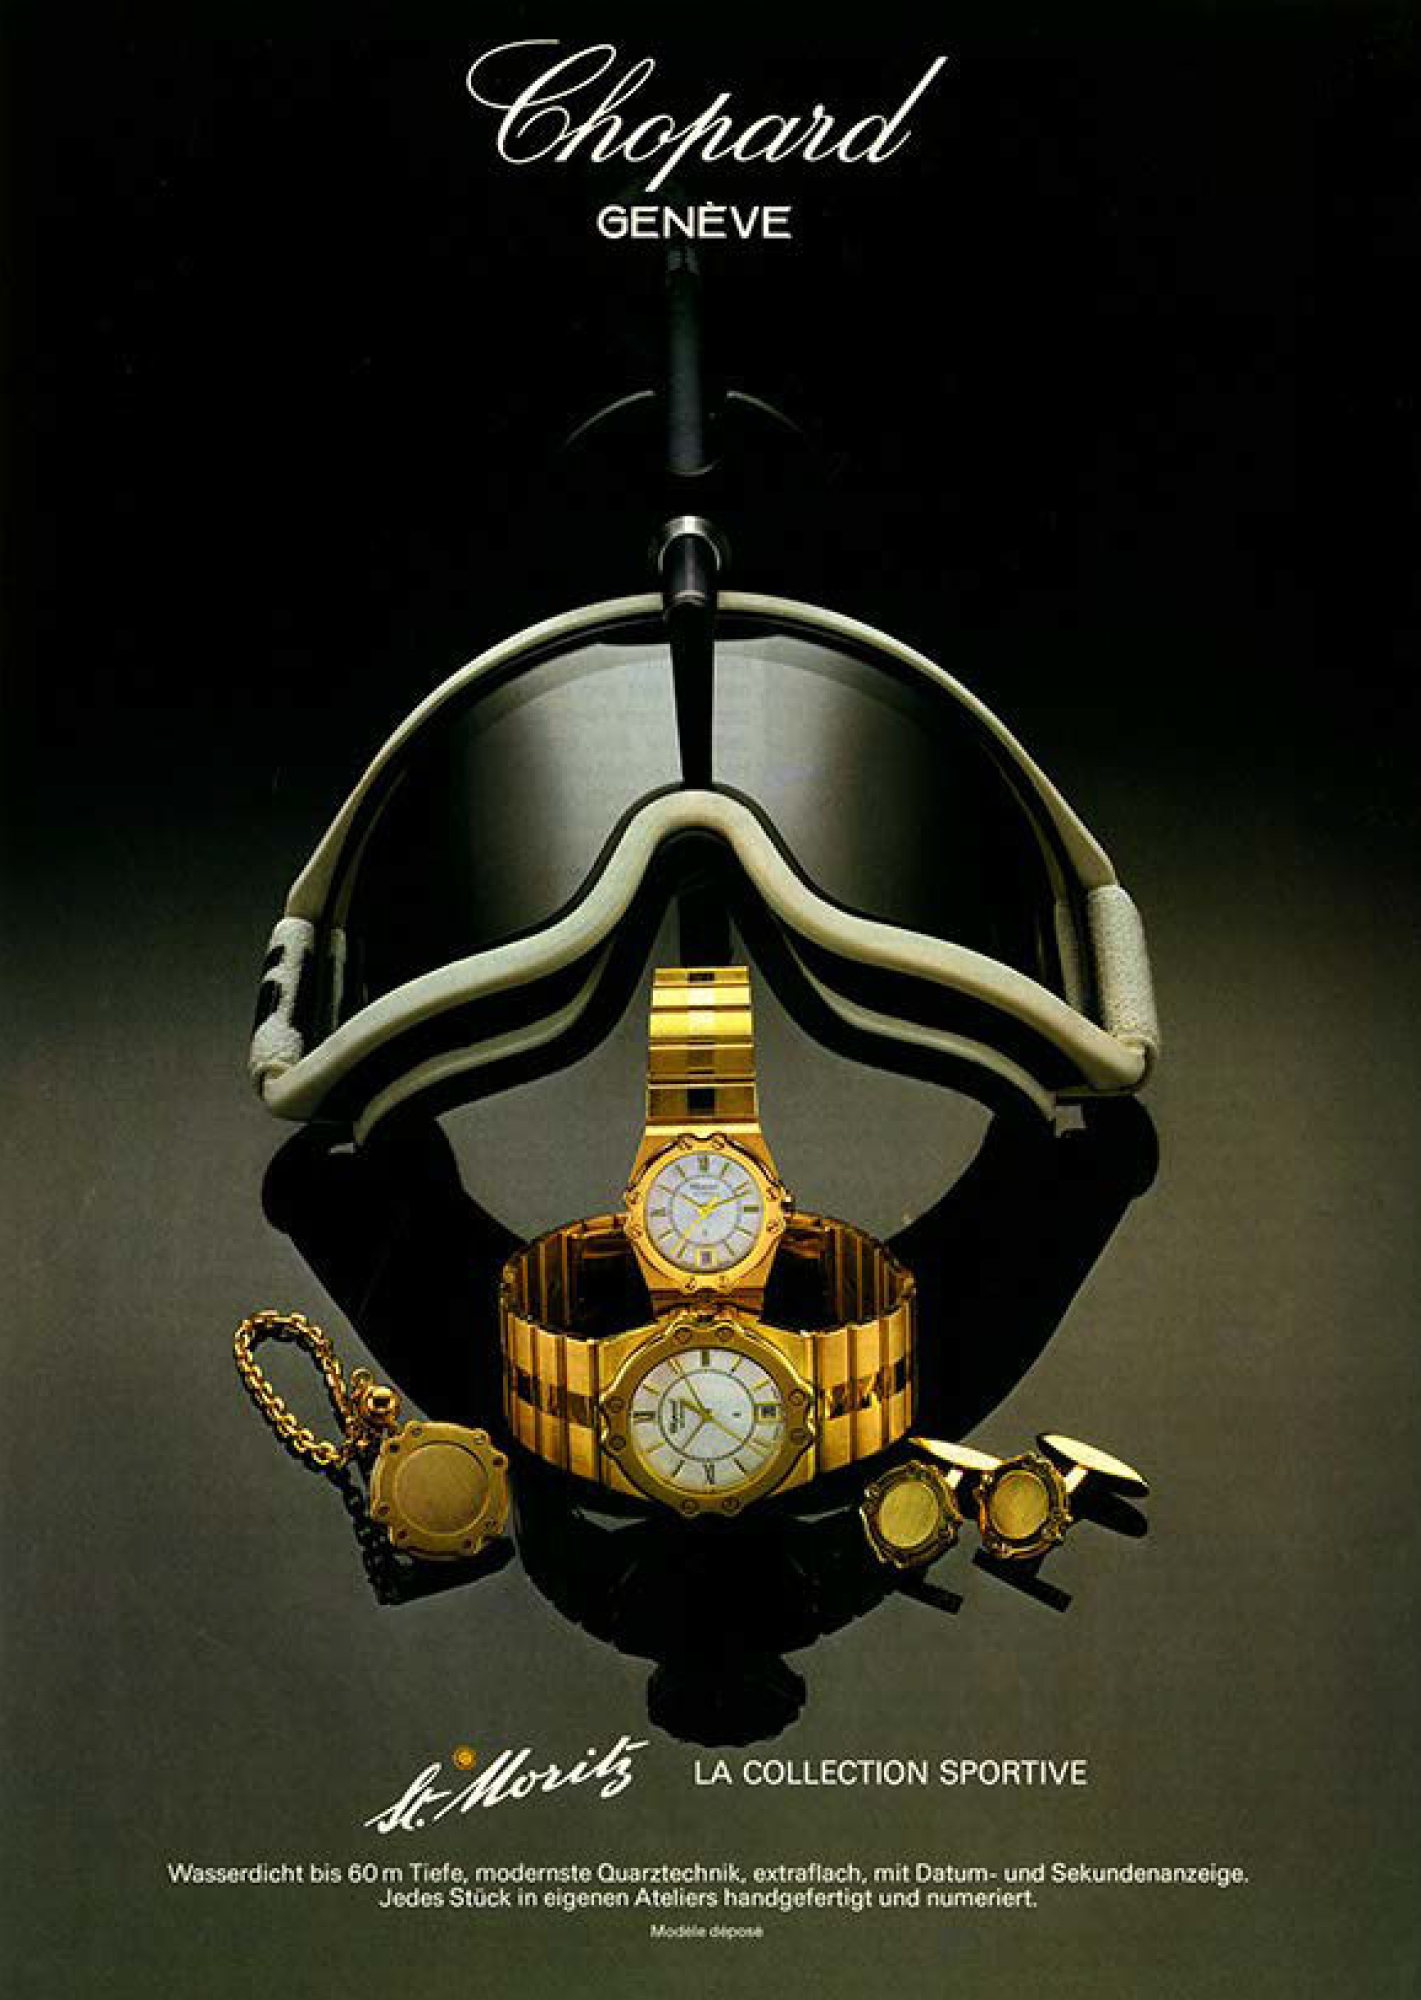 An ad for the original Chopard St Moritz watch